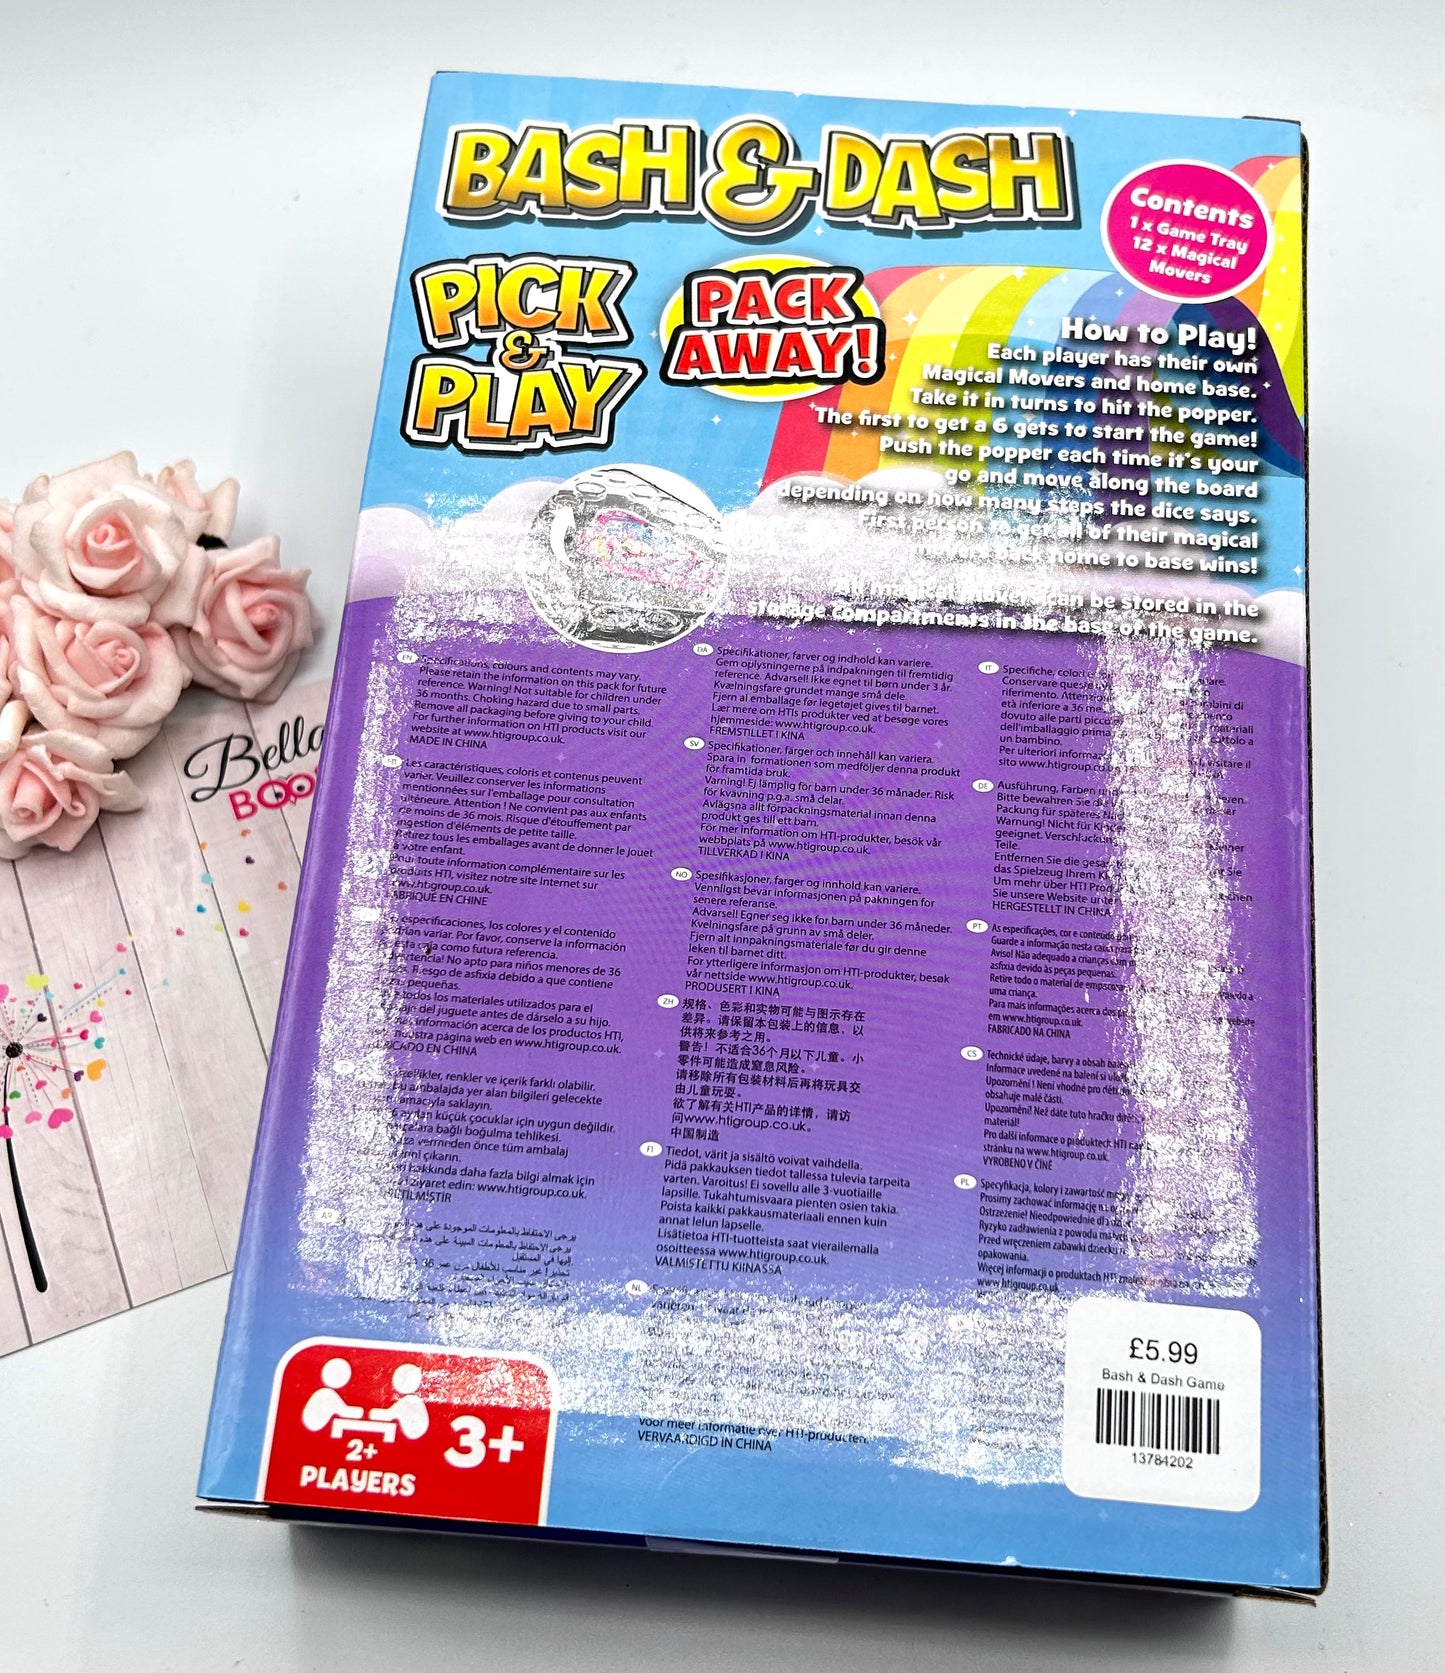 Bash & Dash Game